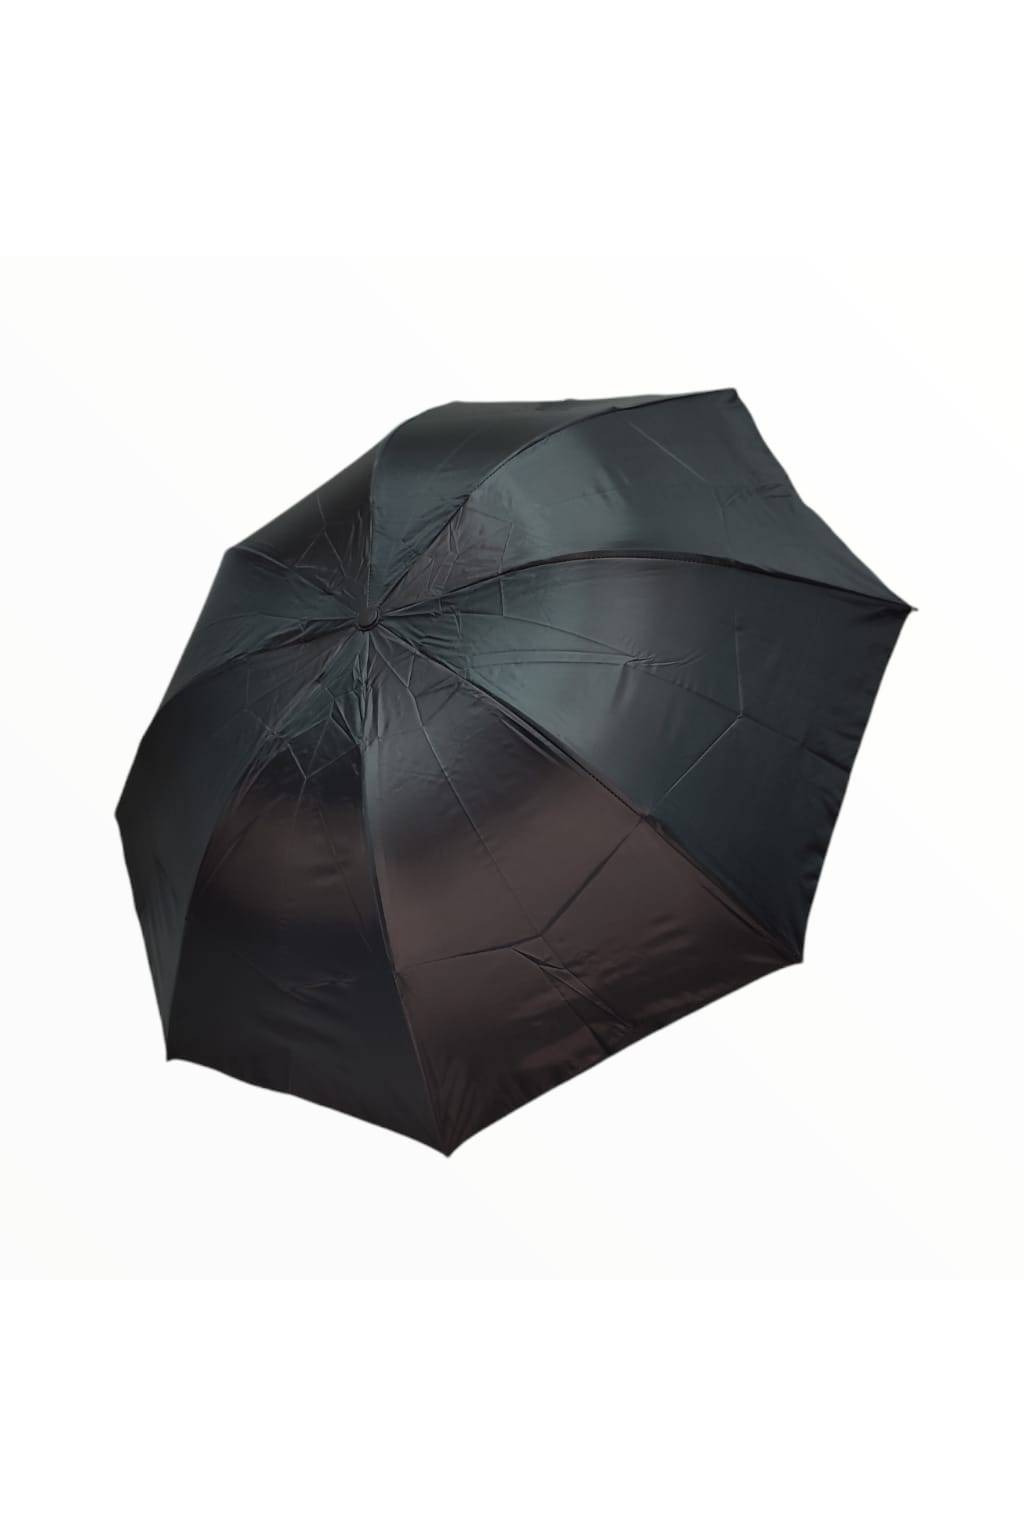 Vetruodolný dáždnik MINI čieny (1)